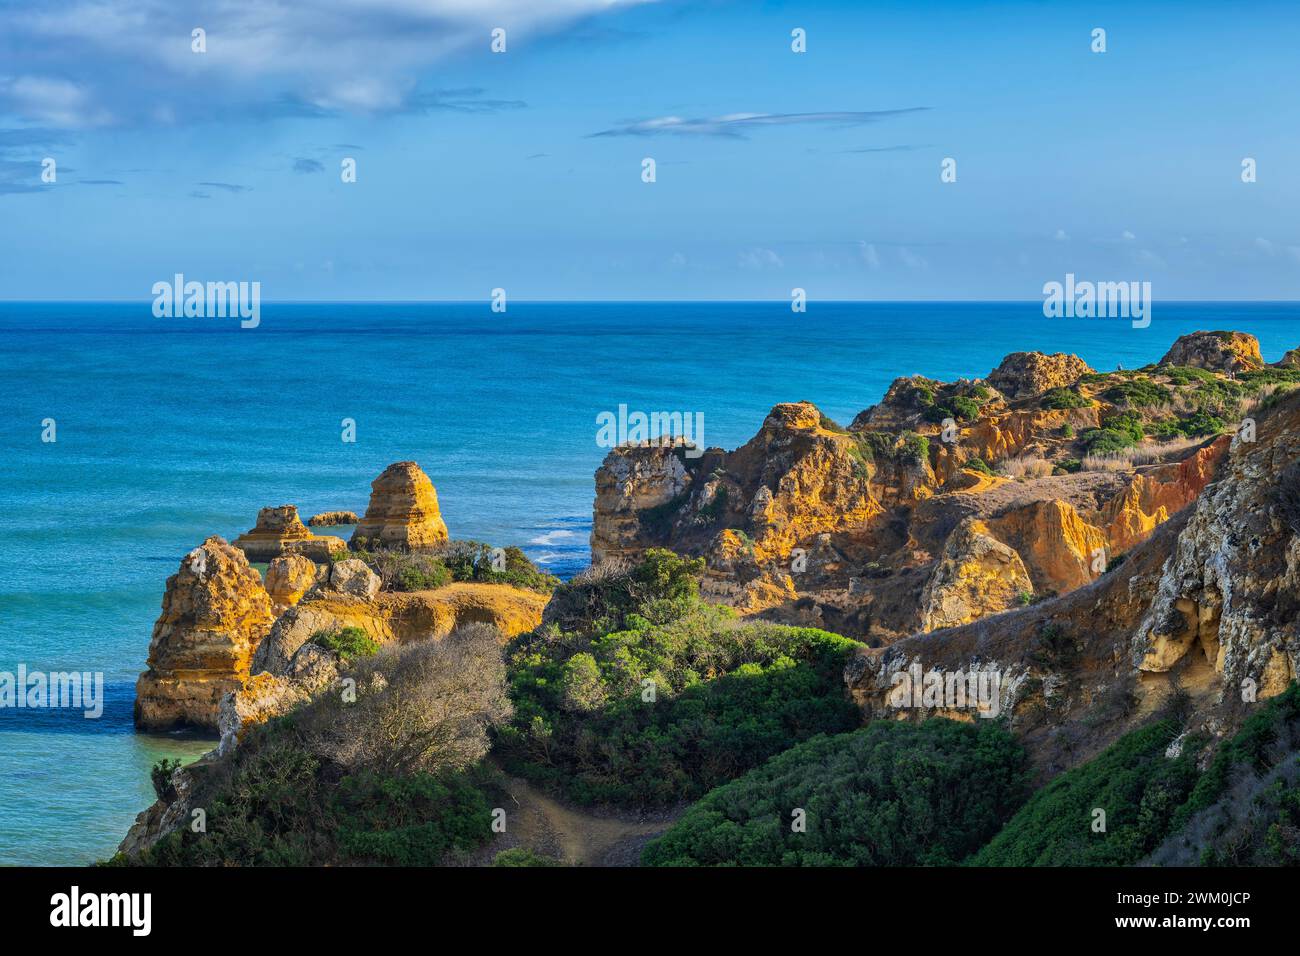 Portogallo, Algarve, Lagos, paesaggio costiero della penisola iberica Foto Stock